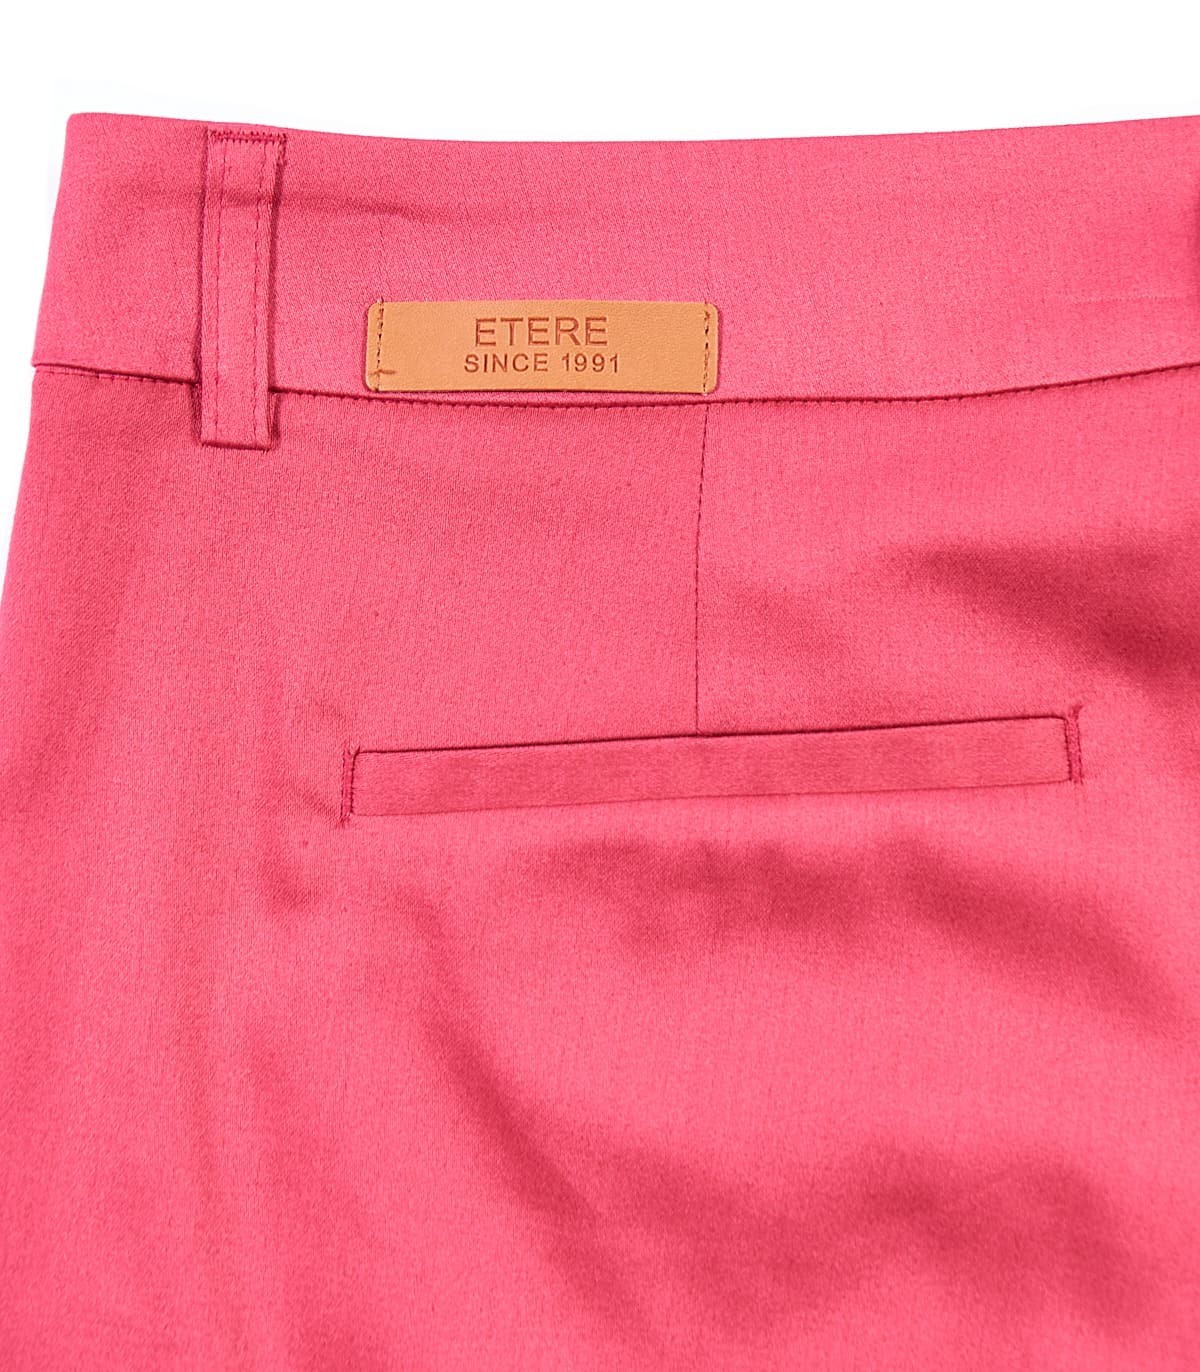 памучен панталон в цвят корал NIKO6